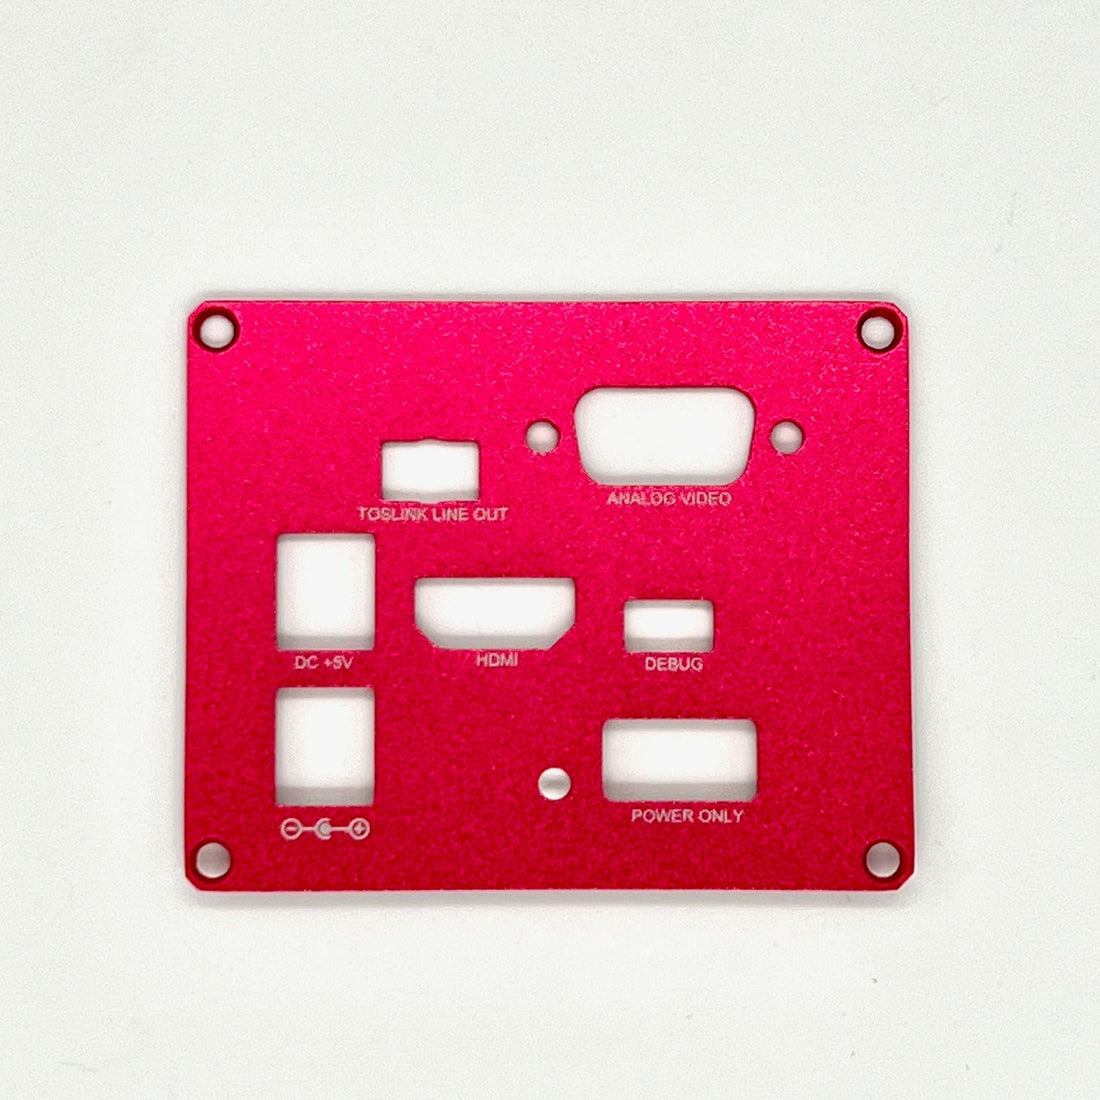 MiSTer FPGA Aluminum Passively Cooled Case Panels - MiSTer Addons